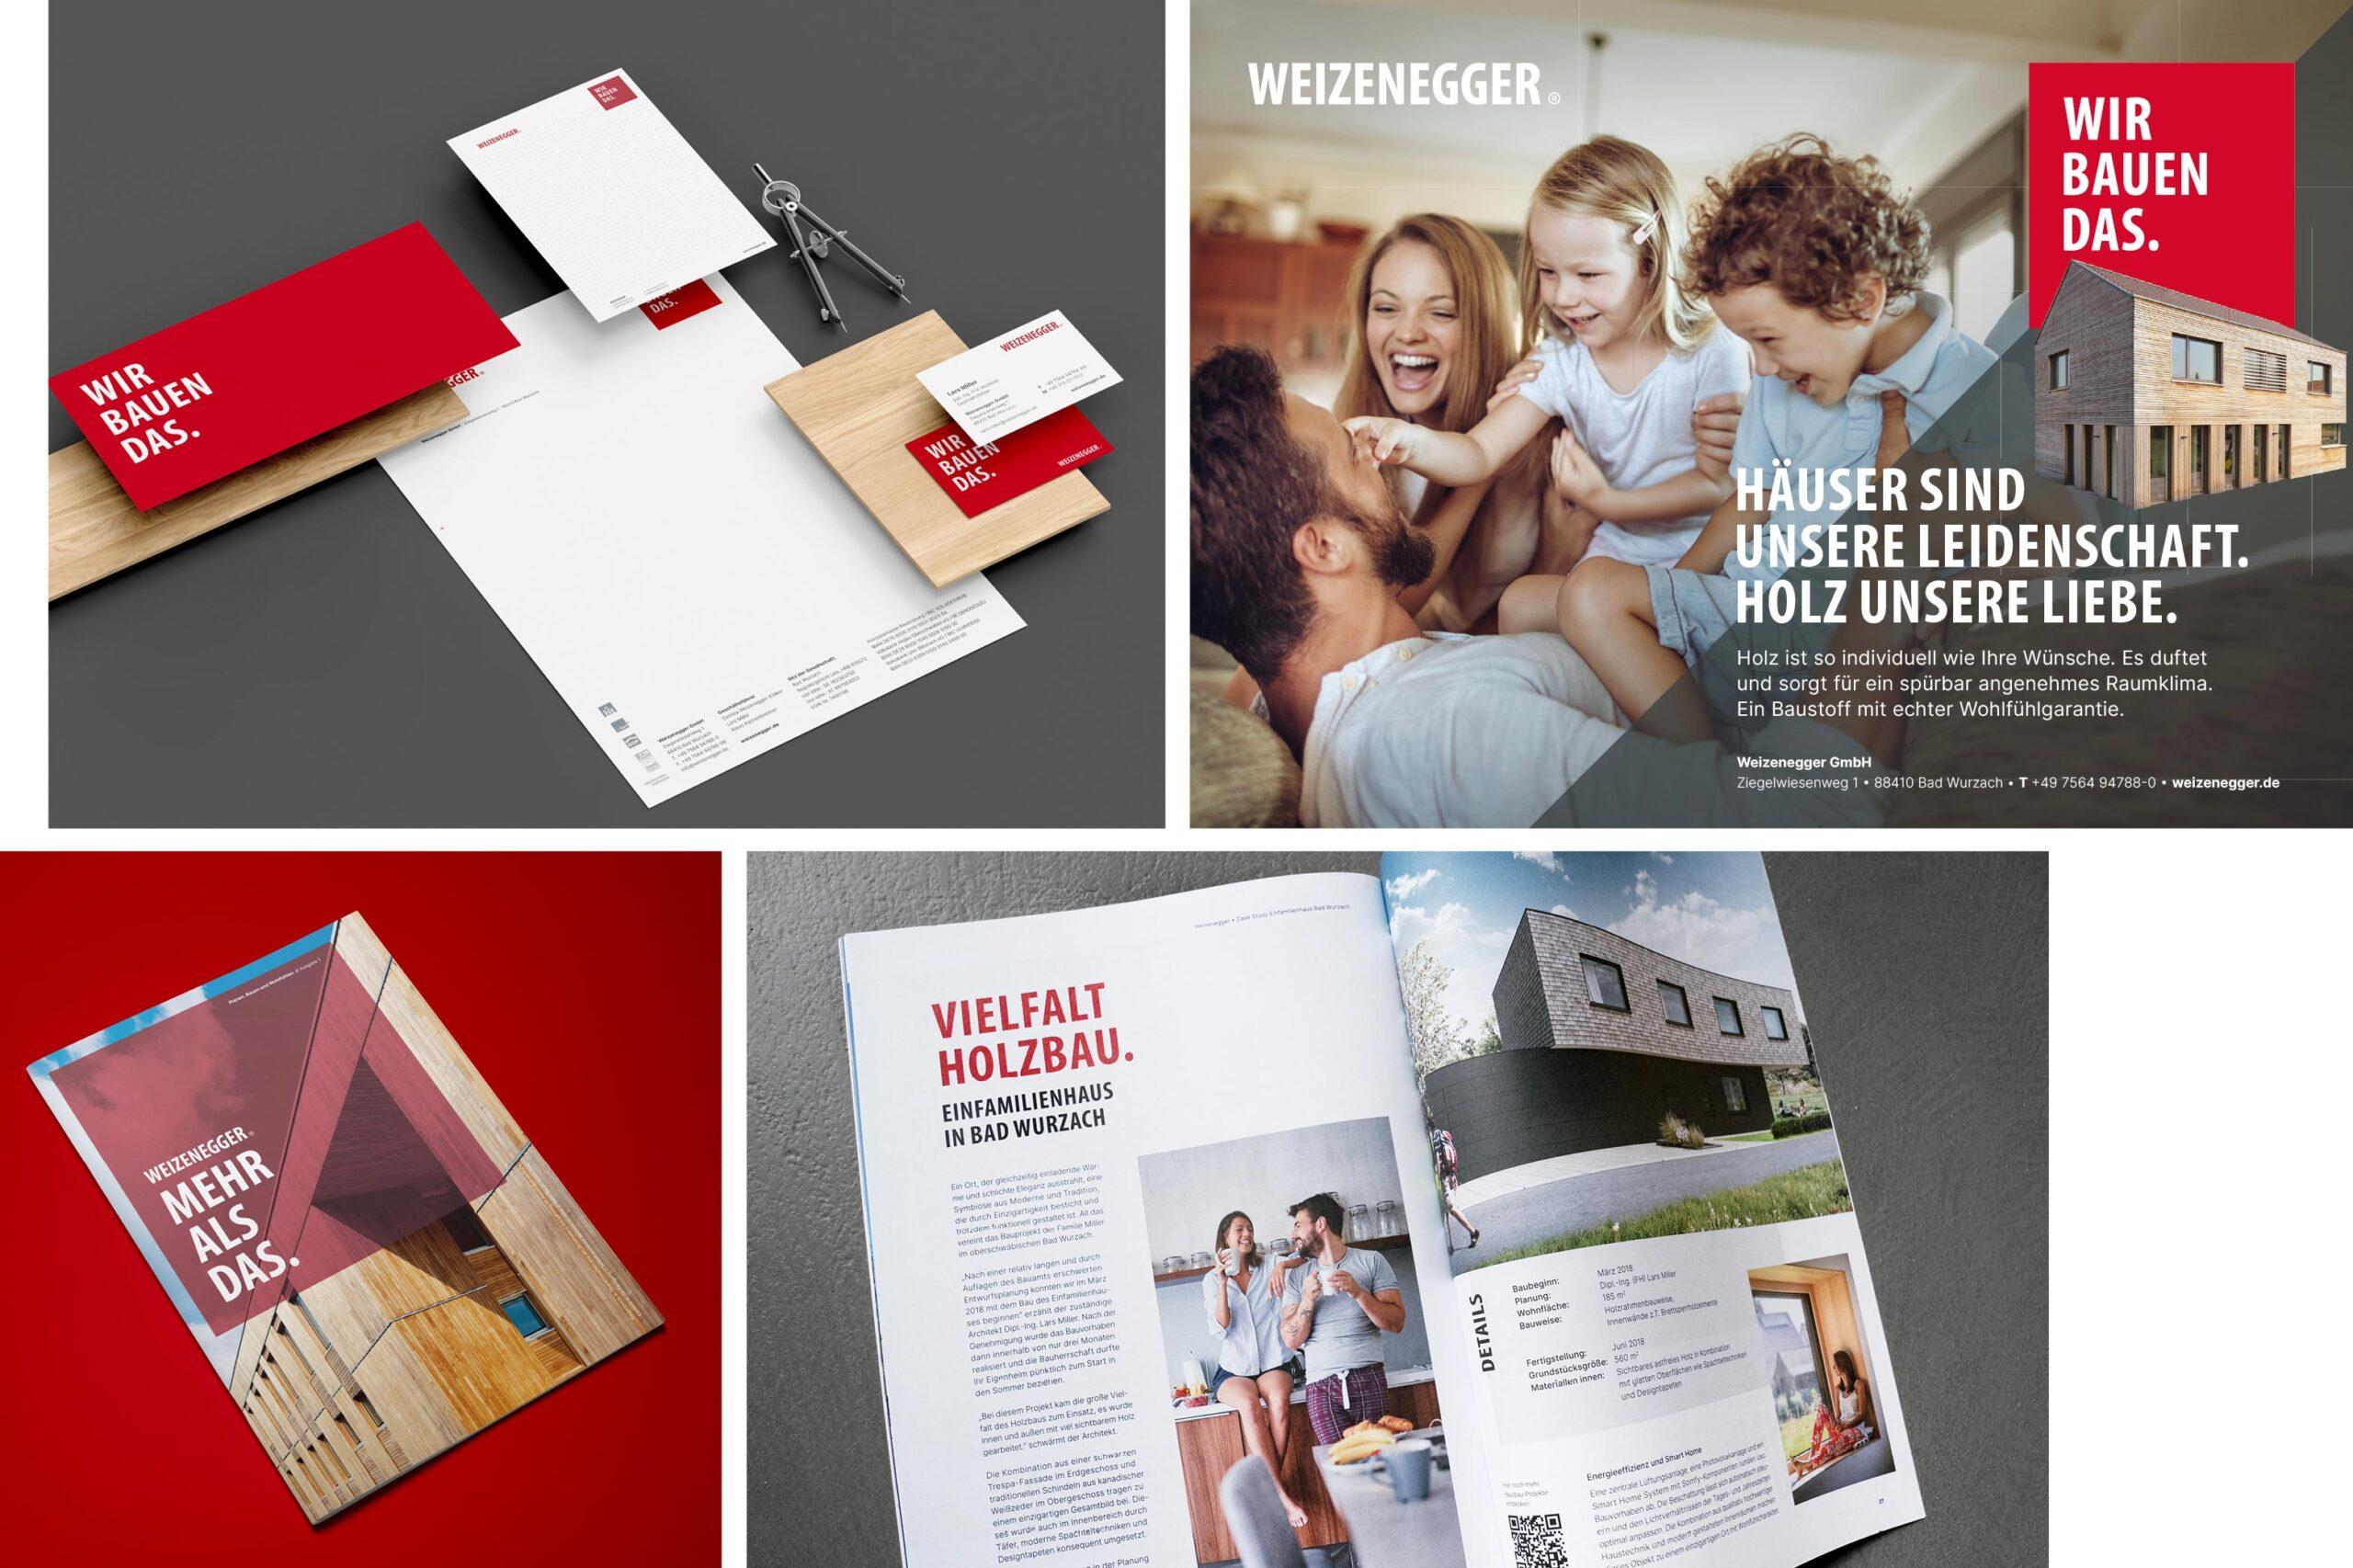 Corporate Designdes Unternhemens Weizenegger zu sehen auf einem Katalog, einem Flyer oder Online Ads.